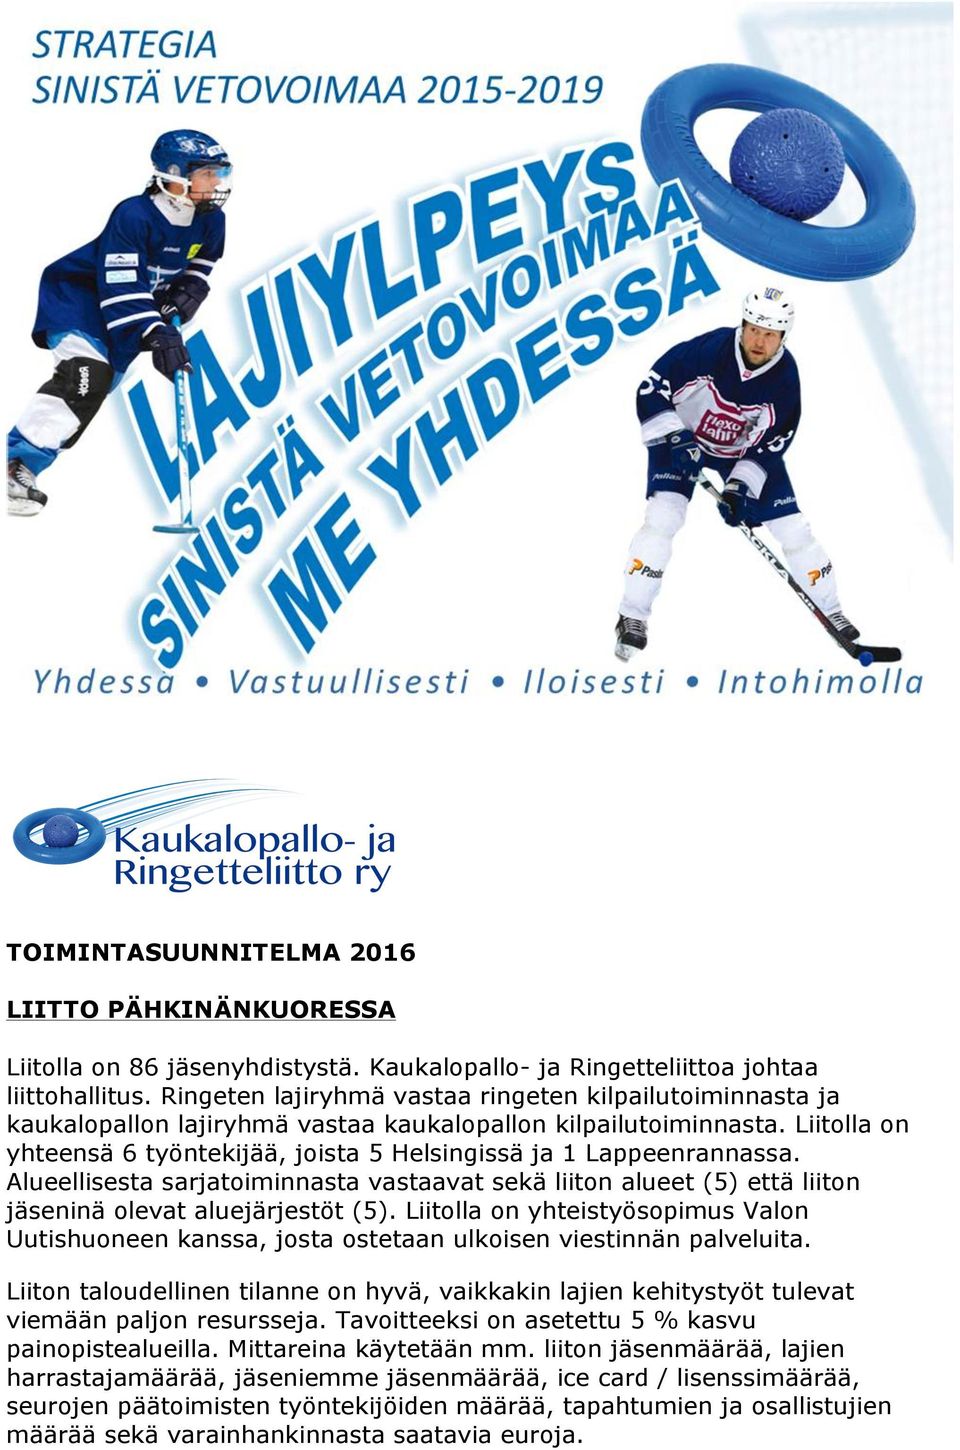 Liitolla on yhteensä 6 työntekijää, joista 5 Helsingissä ja 1 Lappeenrannassa. Alueellisesta sarjatoiminnasta vastaavat sekä liiton alueet (5) että liiton jäseninä olevat aluejärjestöt (5).